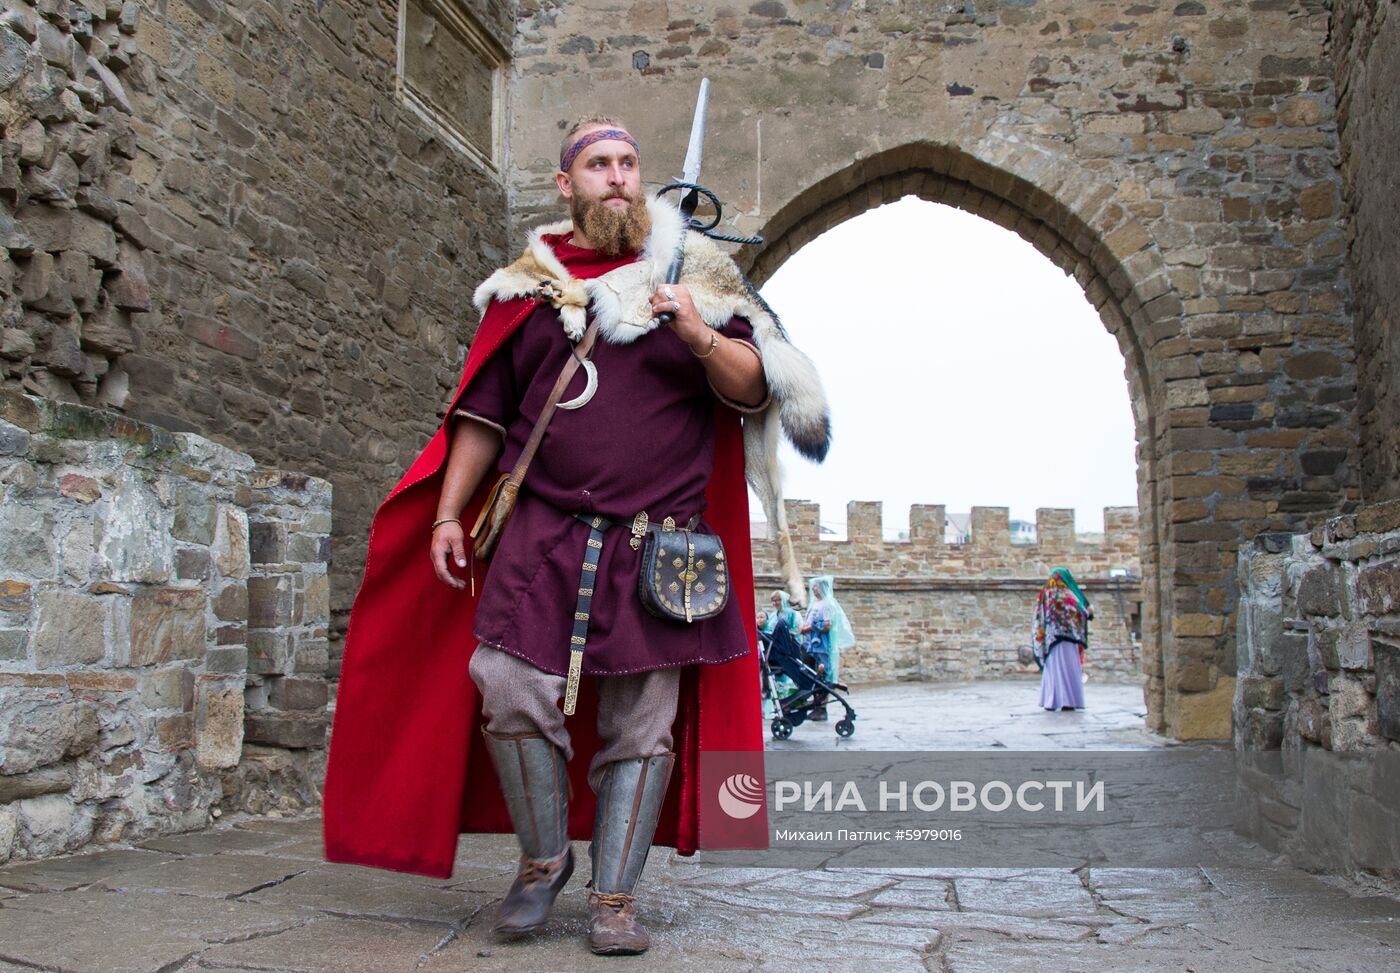 Рыцарский фестиваль "Генуэзский шлем" в Крыму